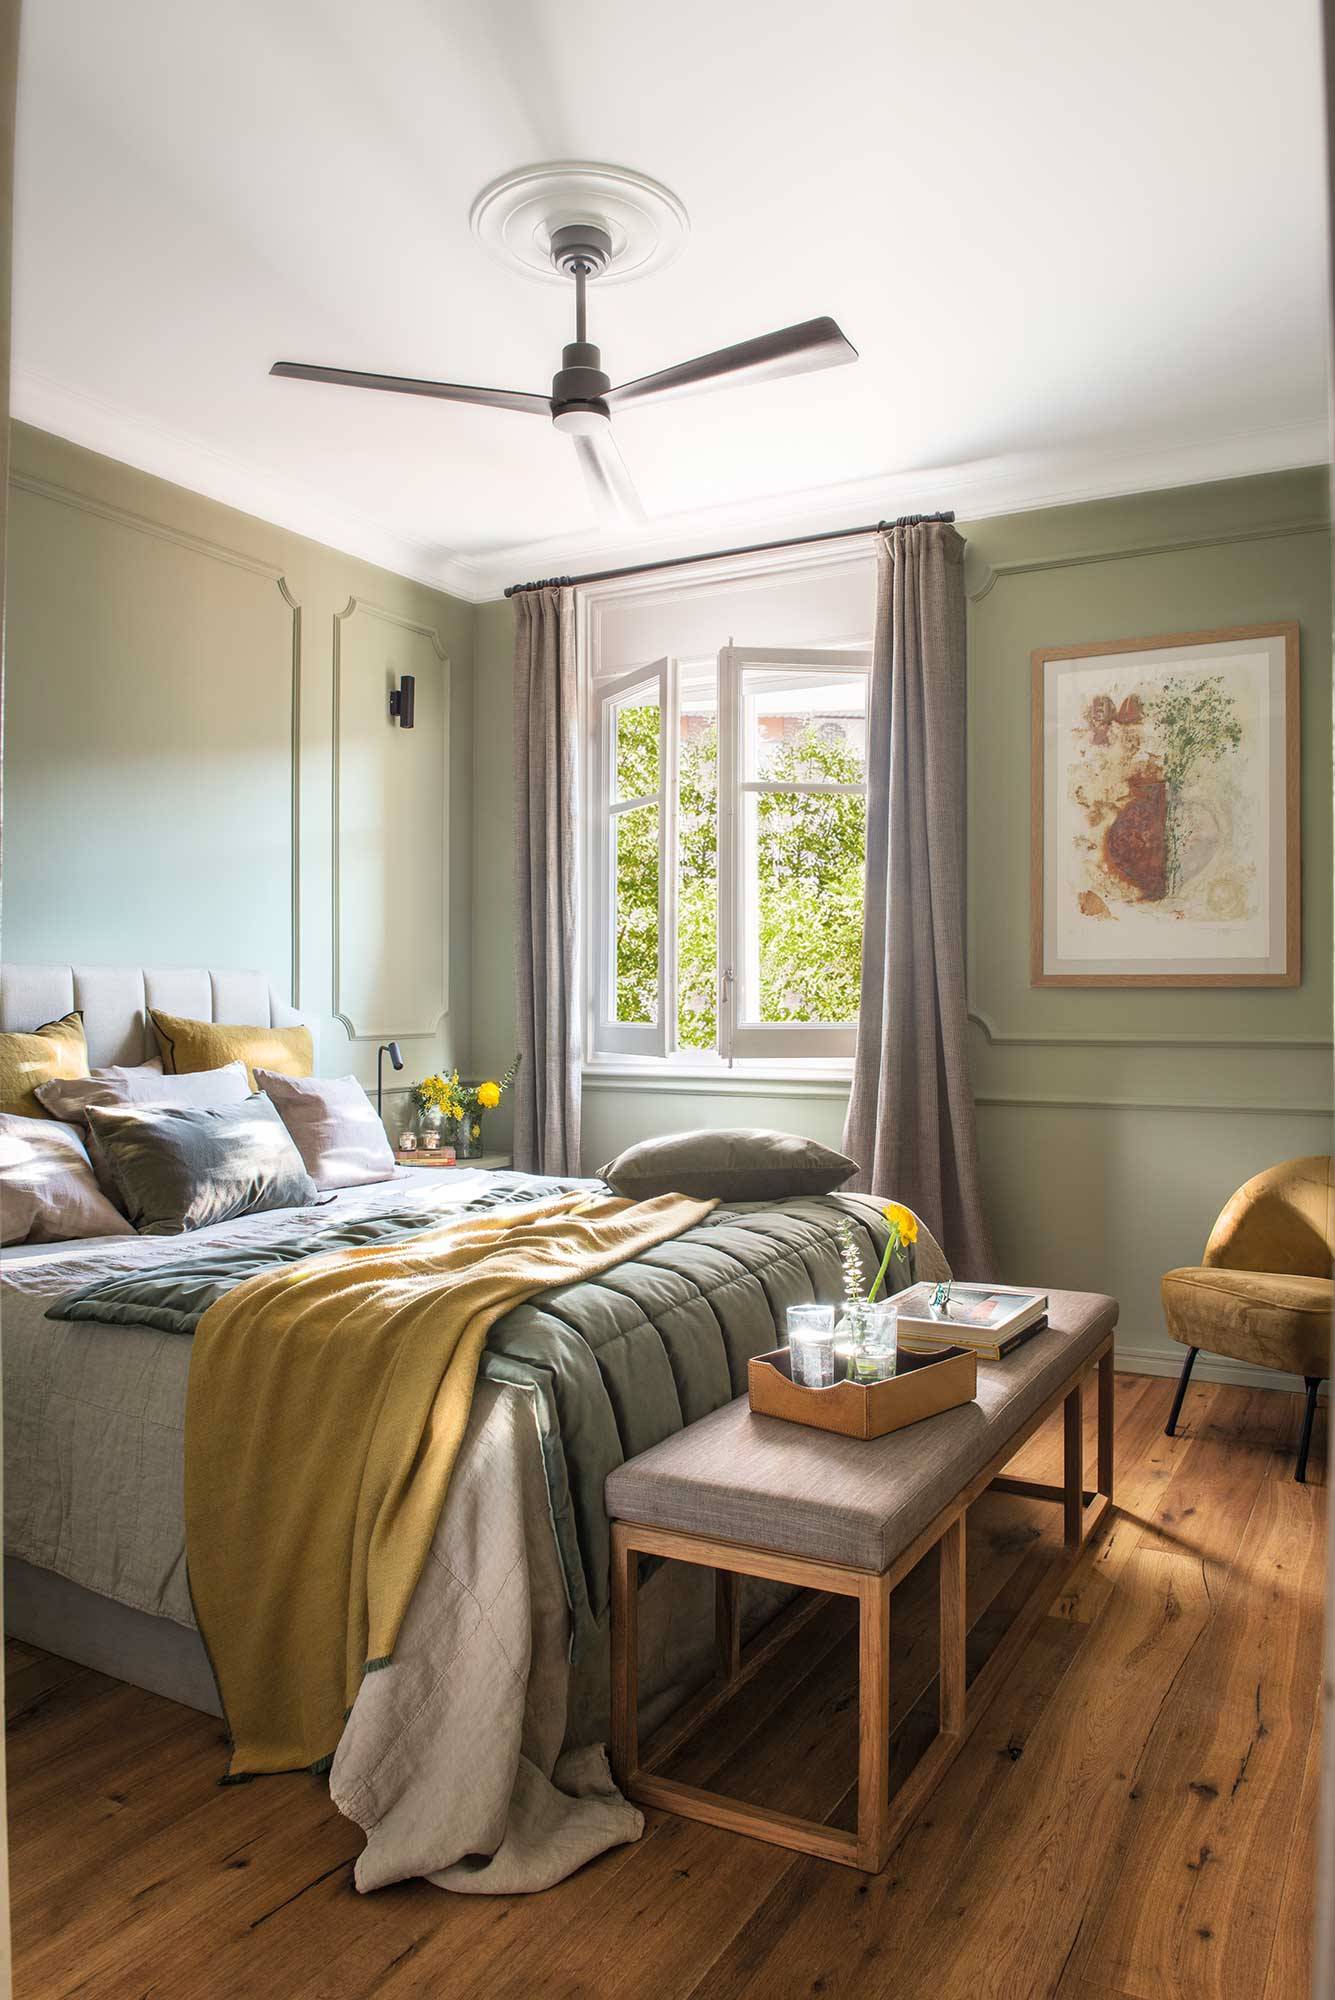 Dormitorio en color verde musgo con banco, ventilador y molduras.